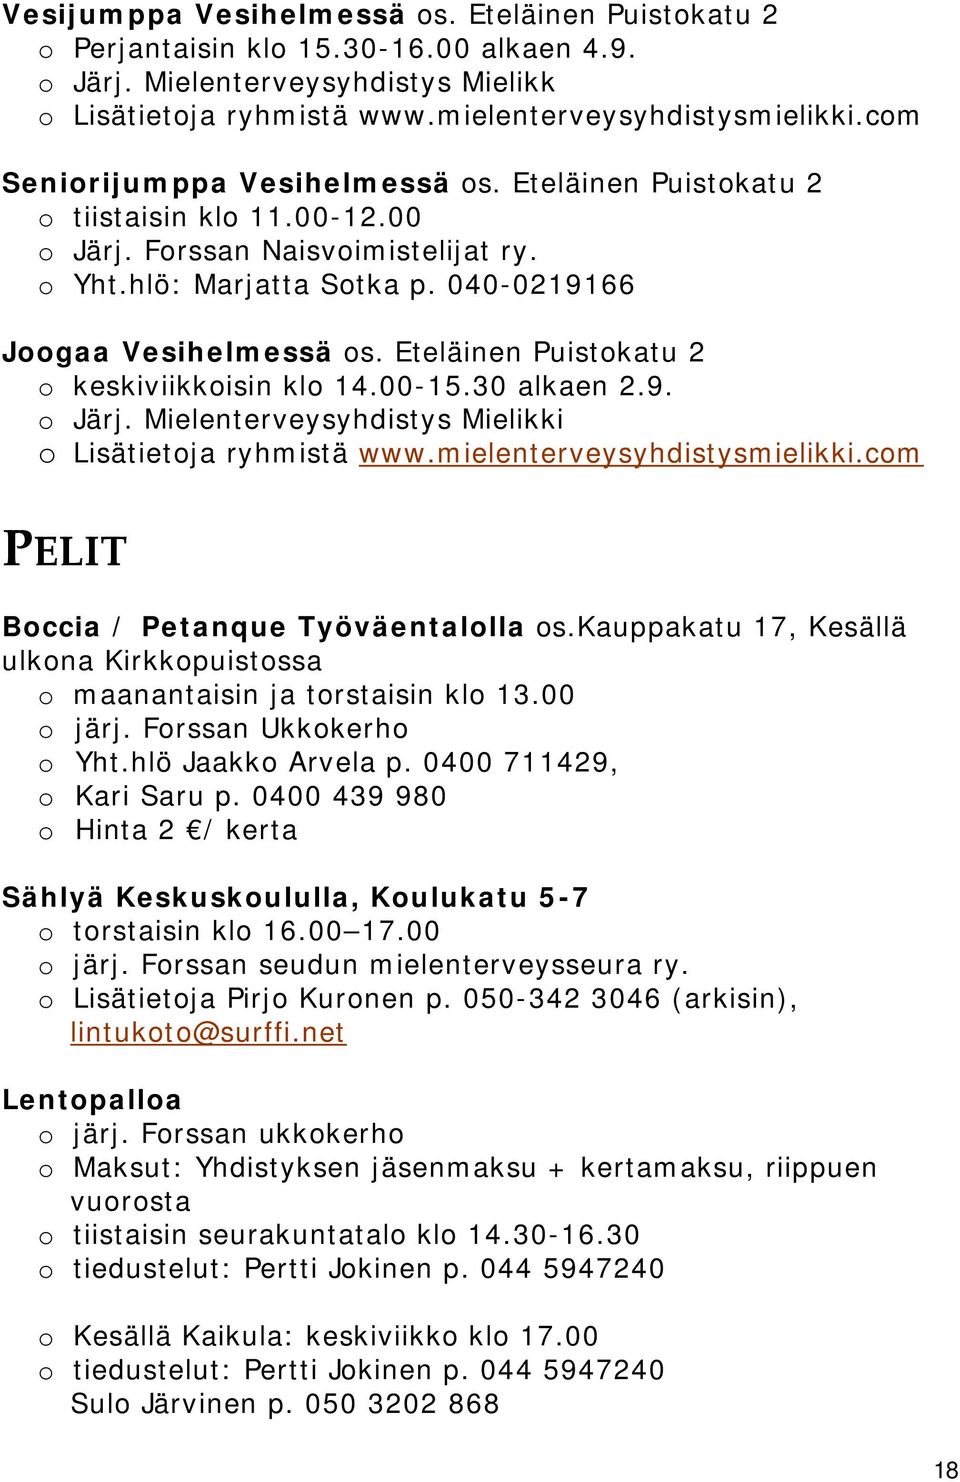 Eteläinen Puistokatu 2 o keskiviikkoisin klo 14.00-15.30 alkaen 2.9. o Järj. Mielenterveysyhdistys Mielikki o Lisätietoja ryhmistä www.mielenterveysyhdistysmielikki.